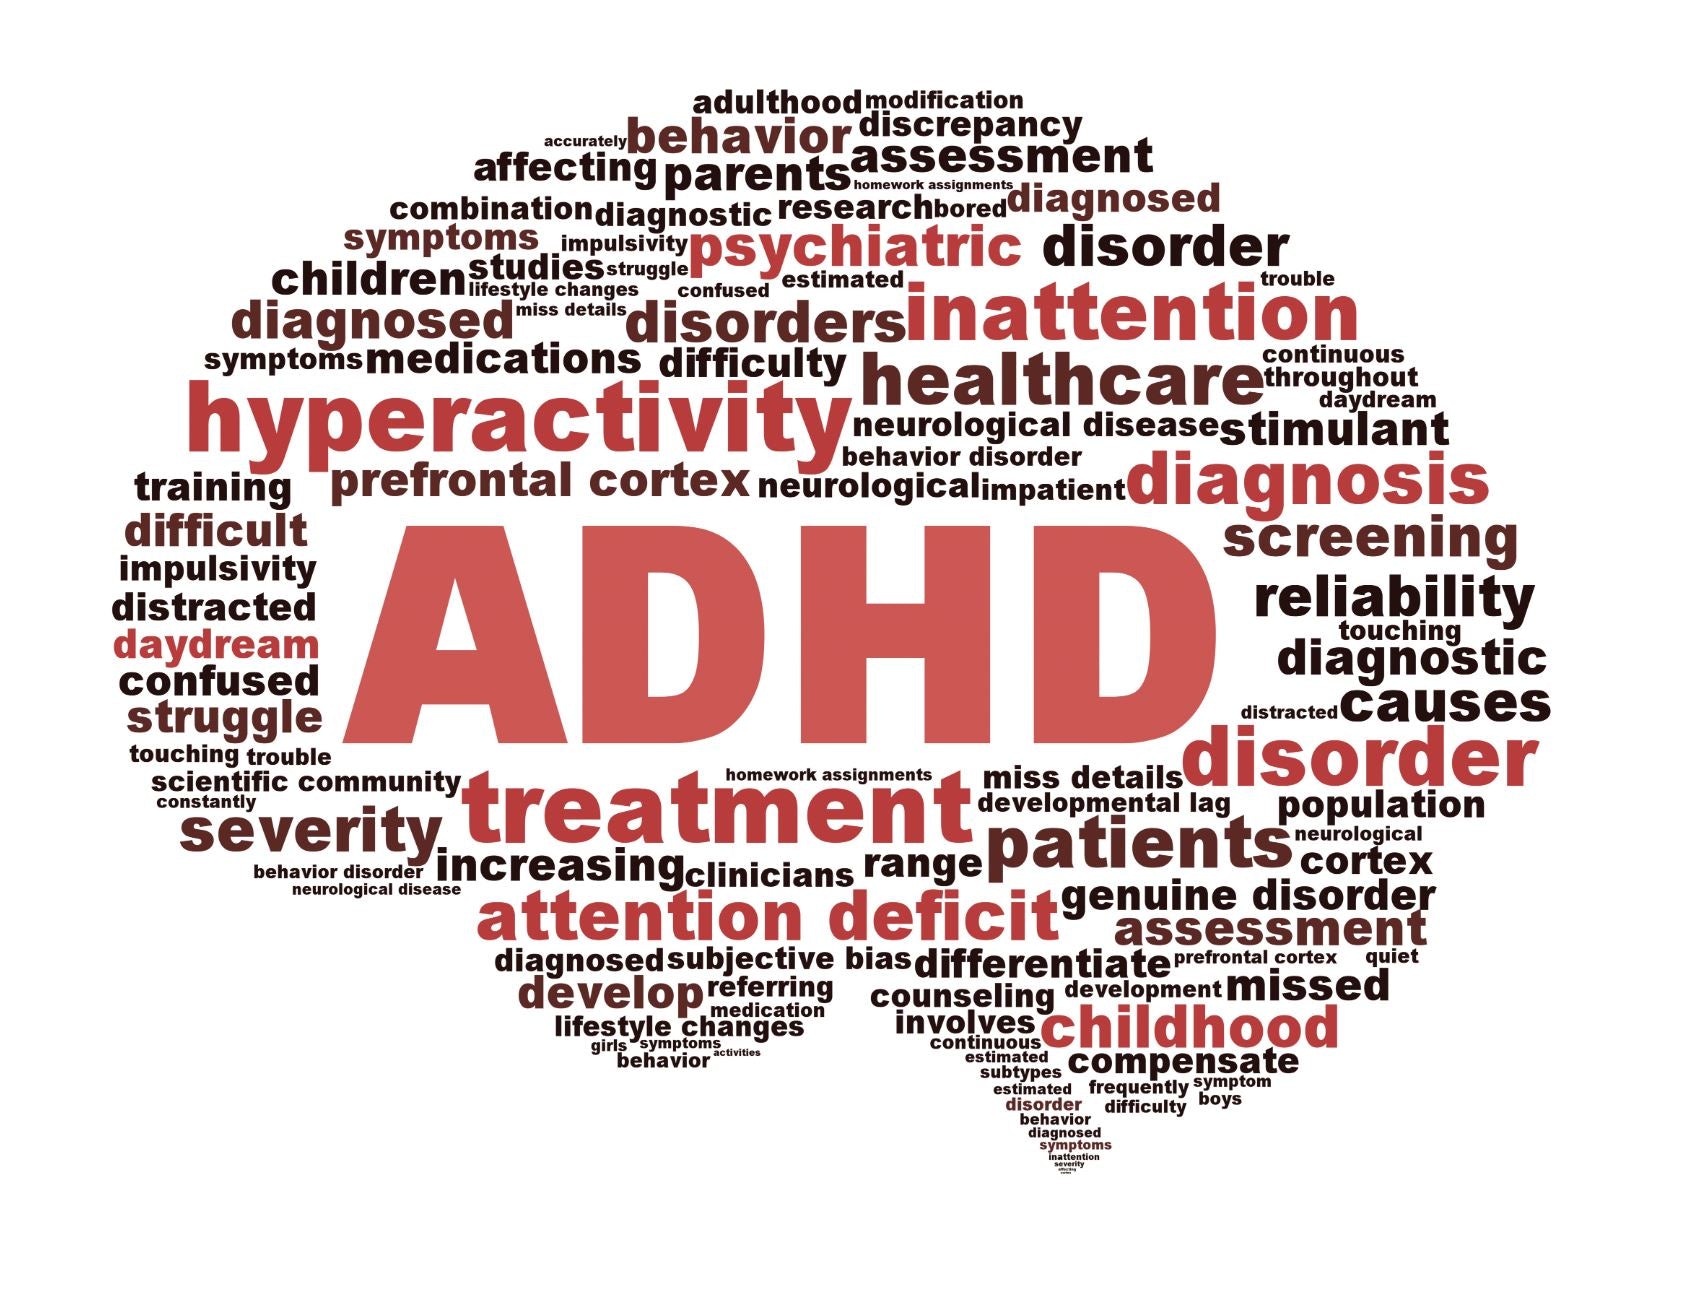 Ruiten tinten en ADHD: Hoe het werkt en waarom het kan helpen